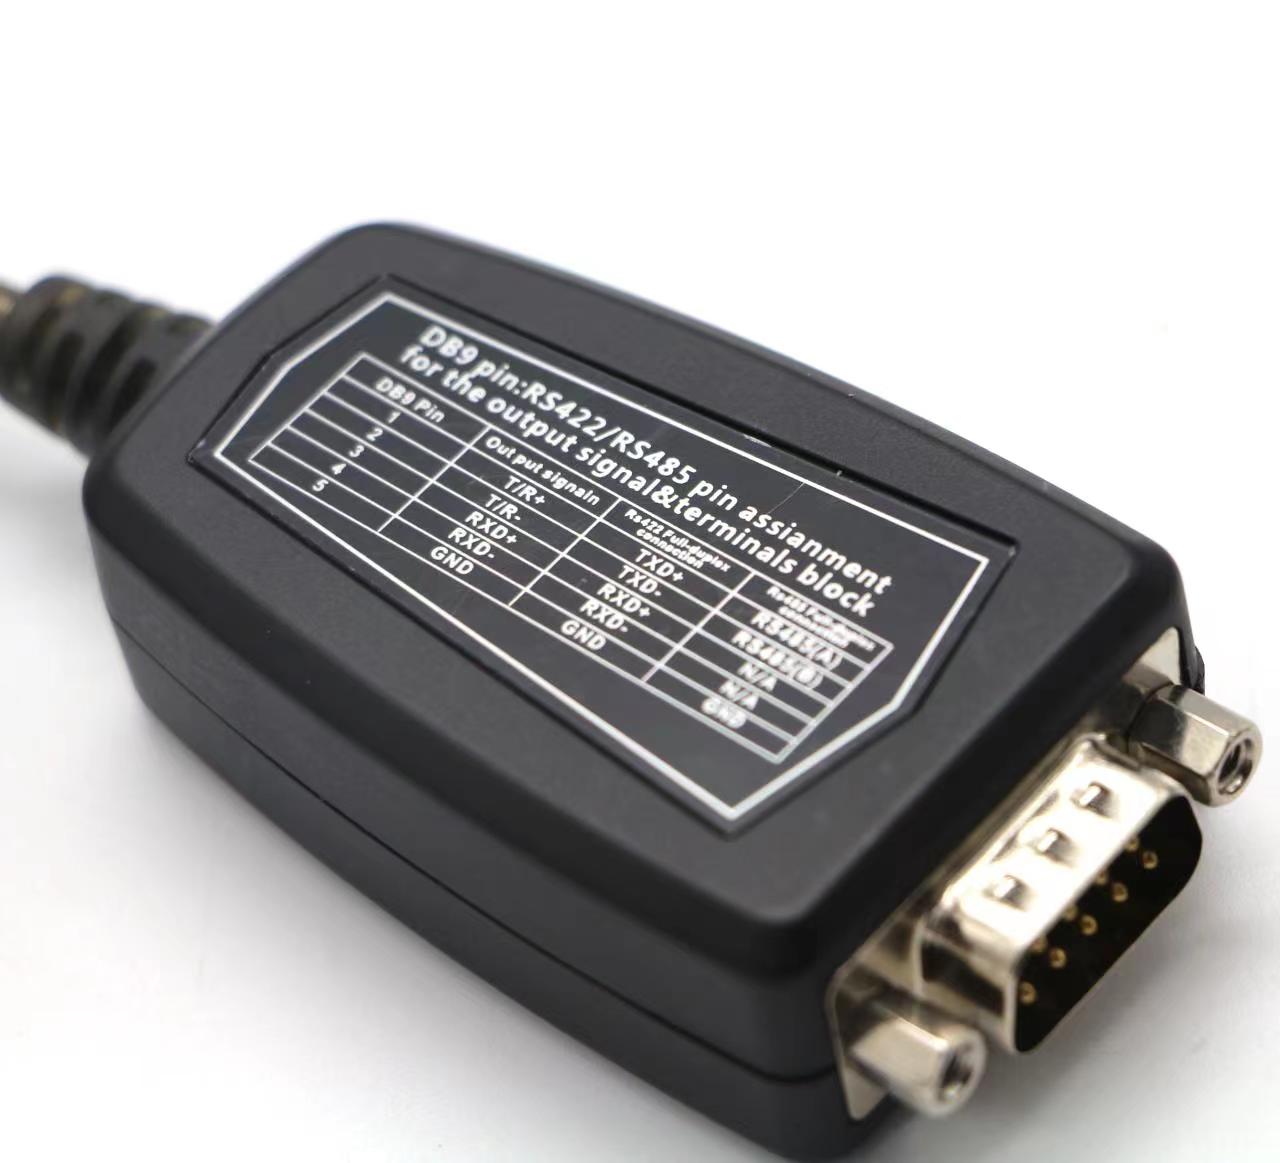 Buen chipset rs232 compatible db9 al cable del controlador USB para el registro de cajeros, módem,